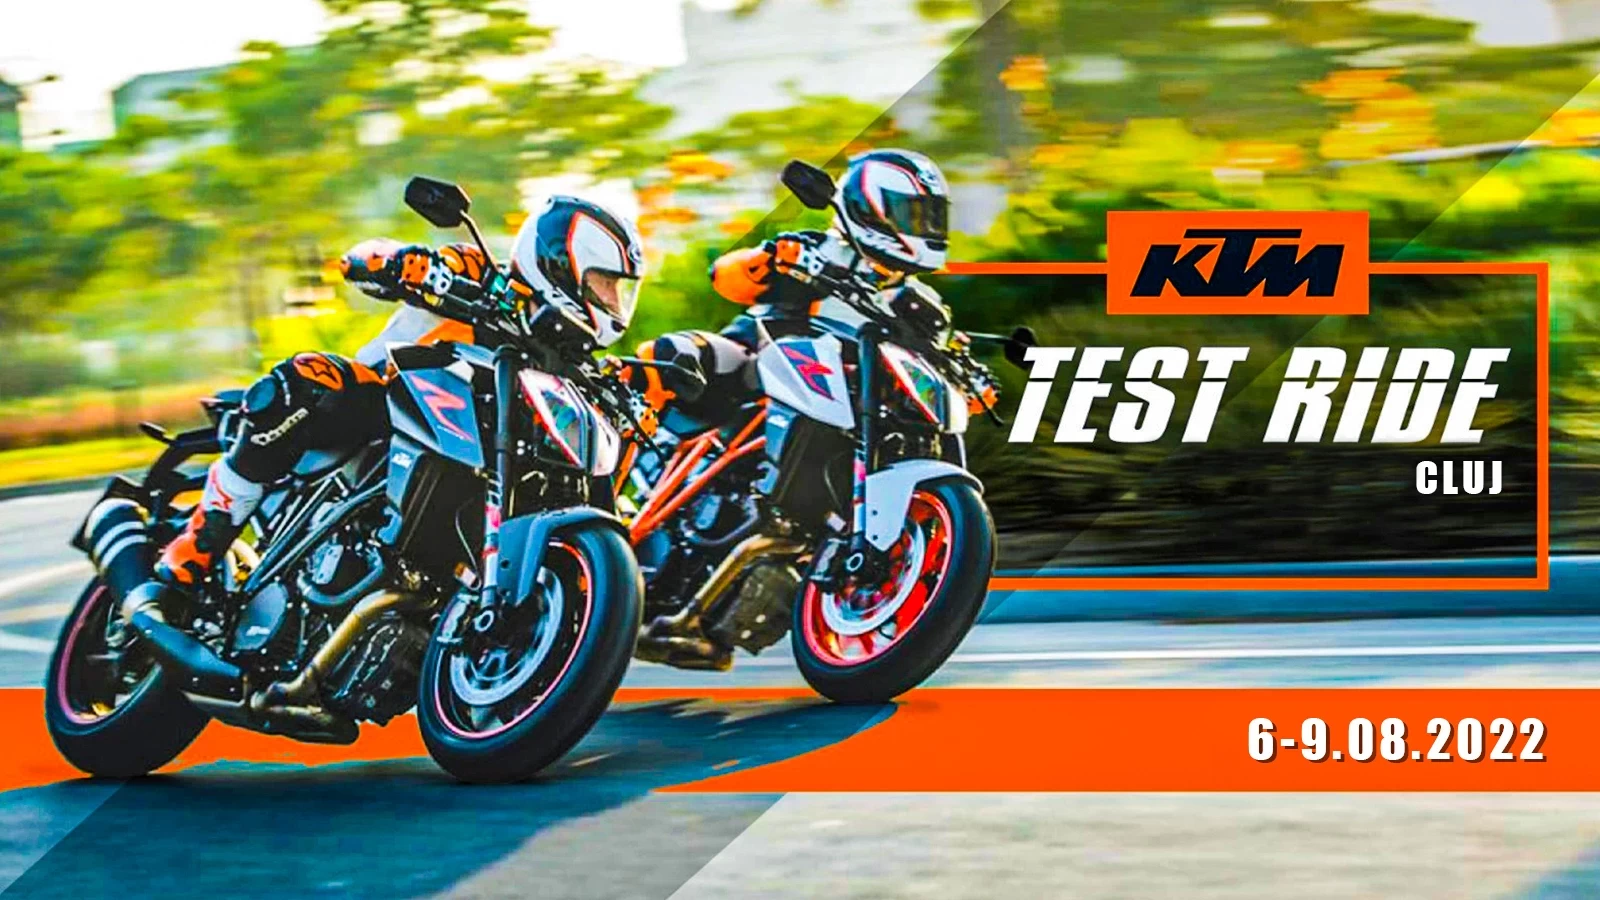 Motocicletele KTM - prezente la Cluj pentru Ride Test